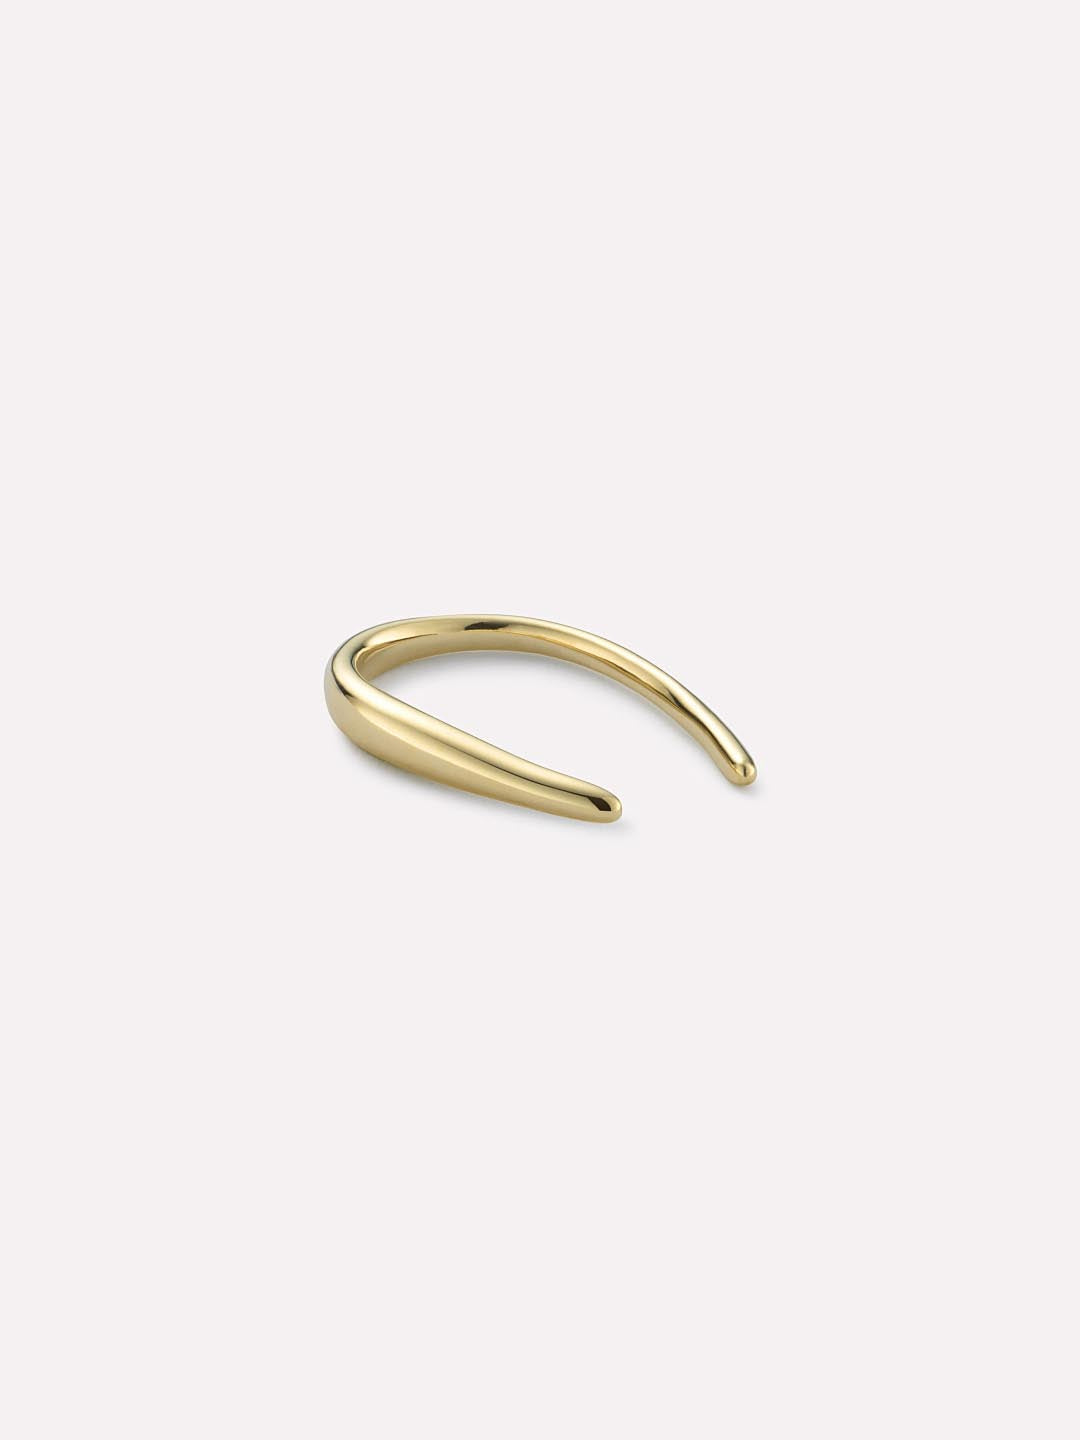 Solid Gold Hook Earrings - Gold Hook Single Earring - Ana Luisa Jewelry - Mother's Day Earrings